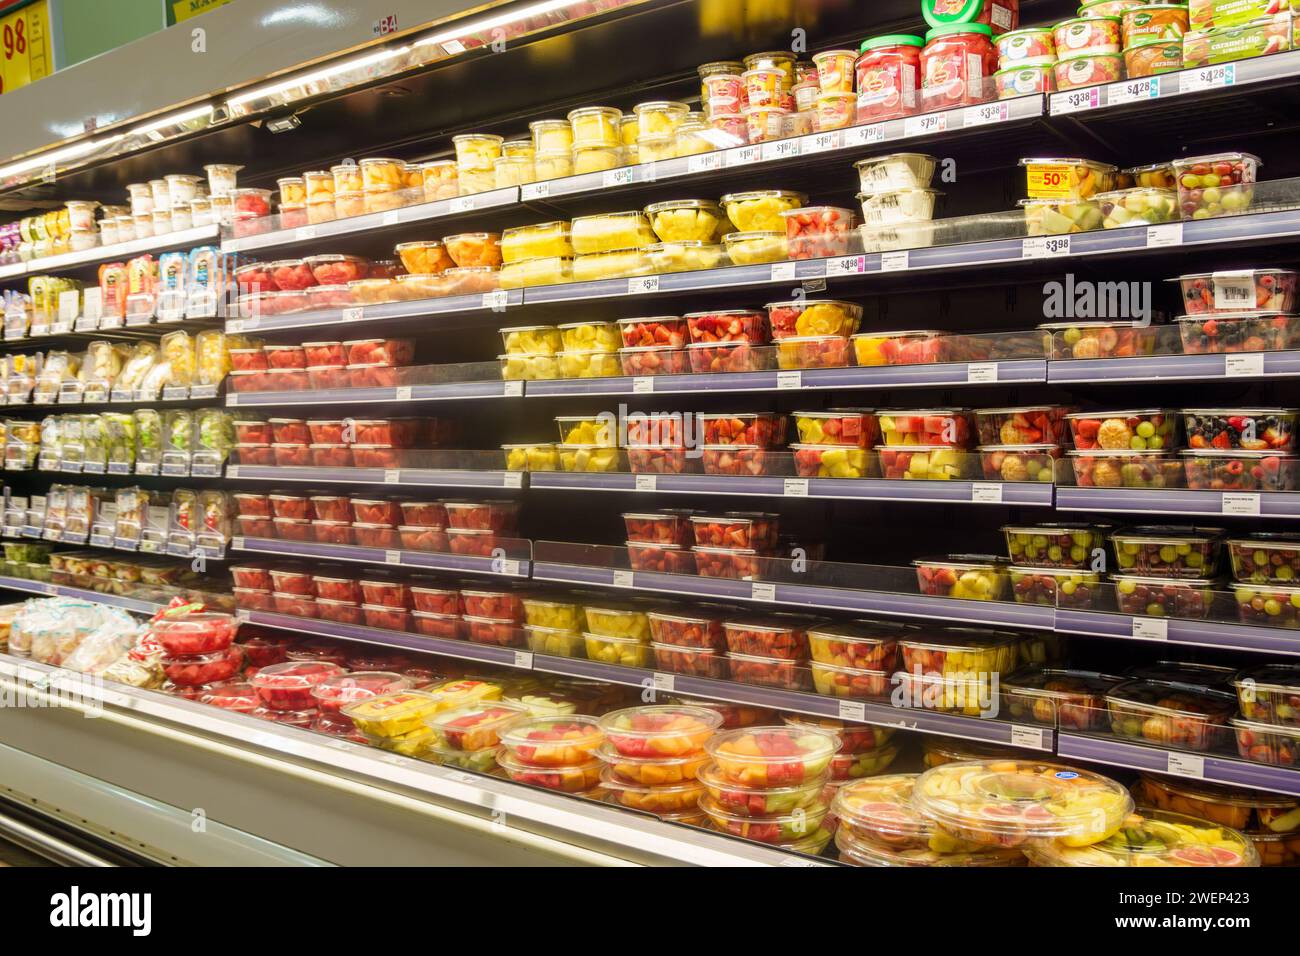 Espositori per supermercati di alimentari con frutta e verdura a fette e tagliate a dadini confezionate Foto Stock